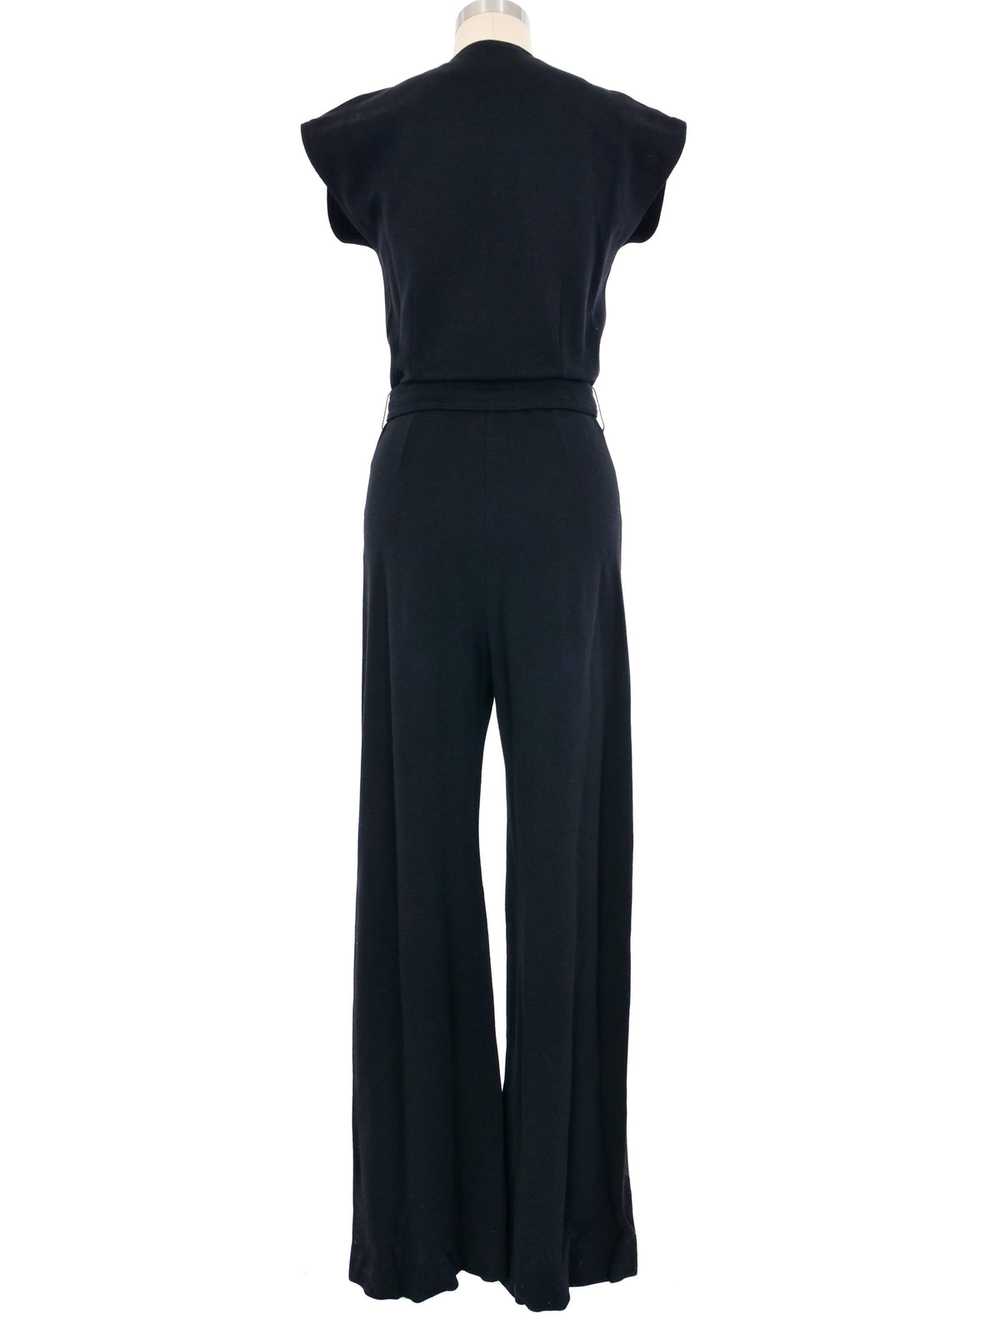 1970s Black Knit Belted Jumpsuit - image 4